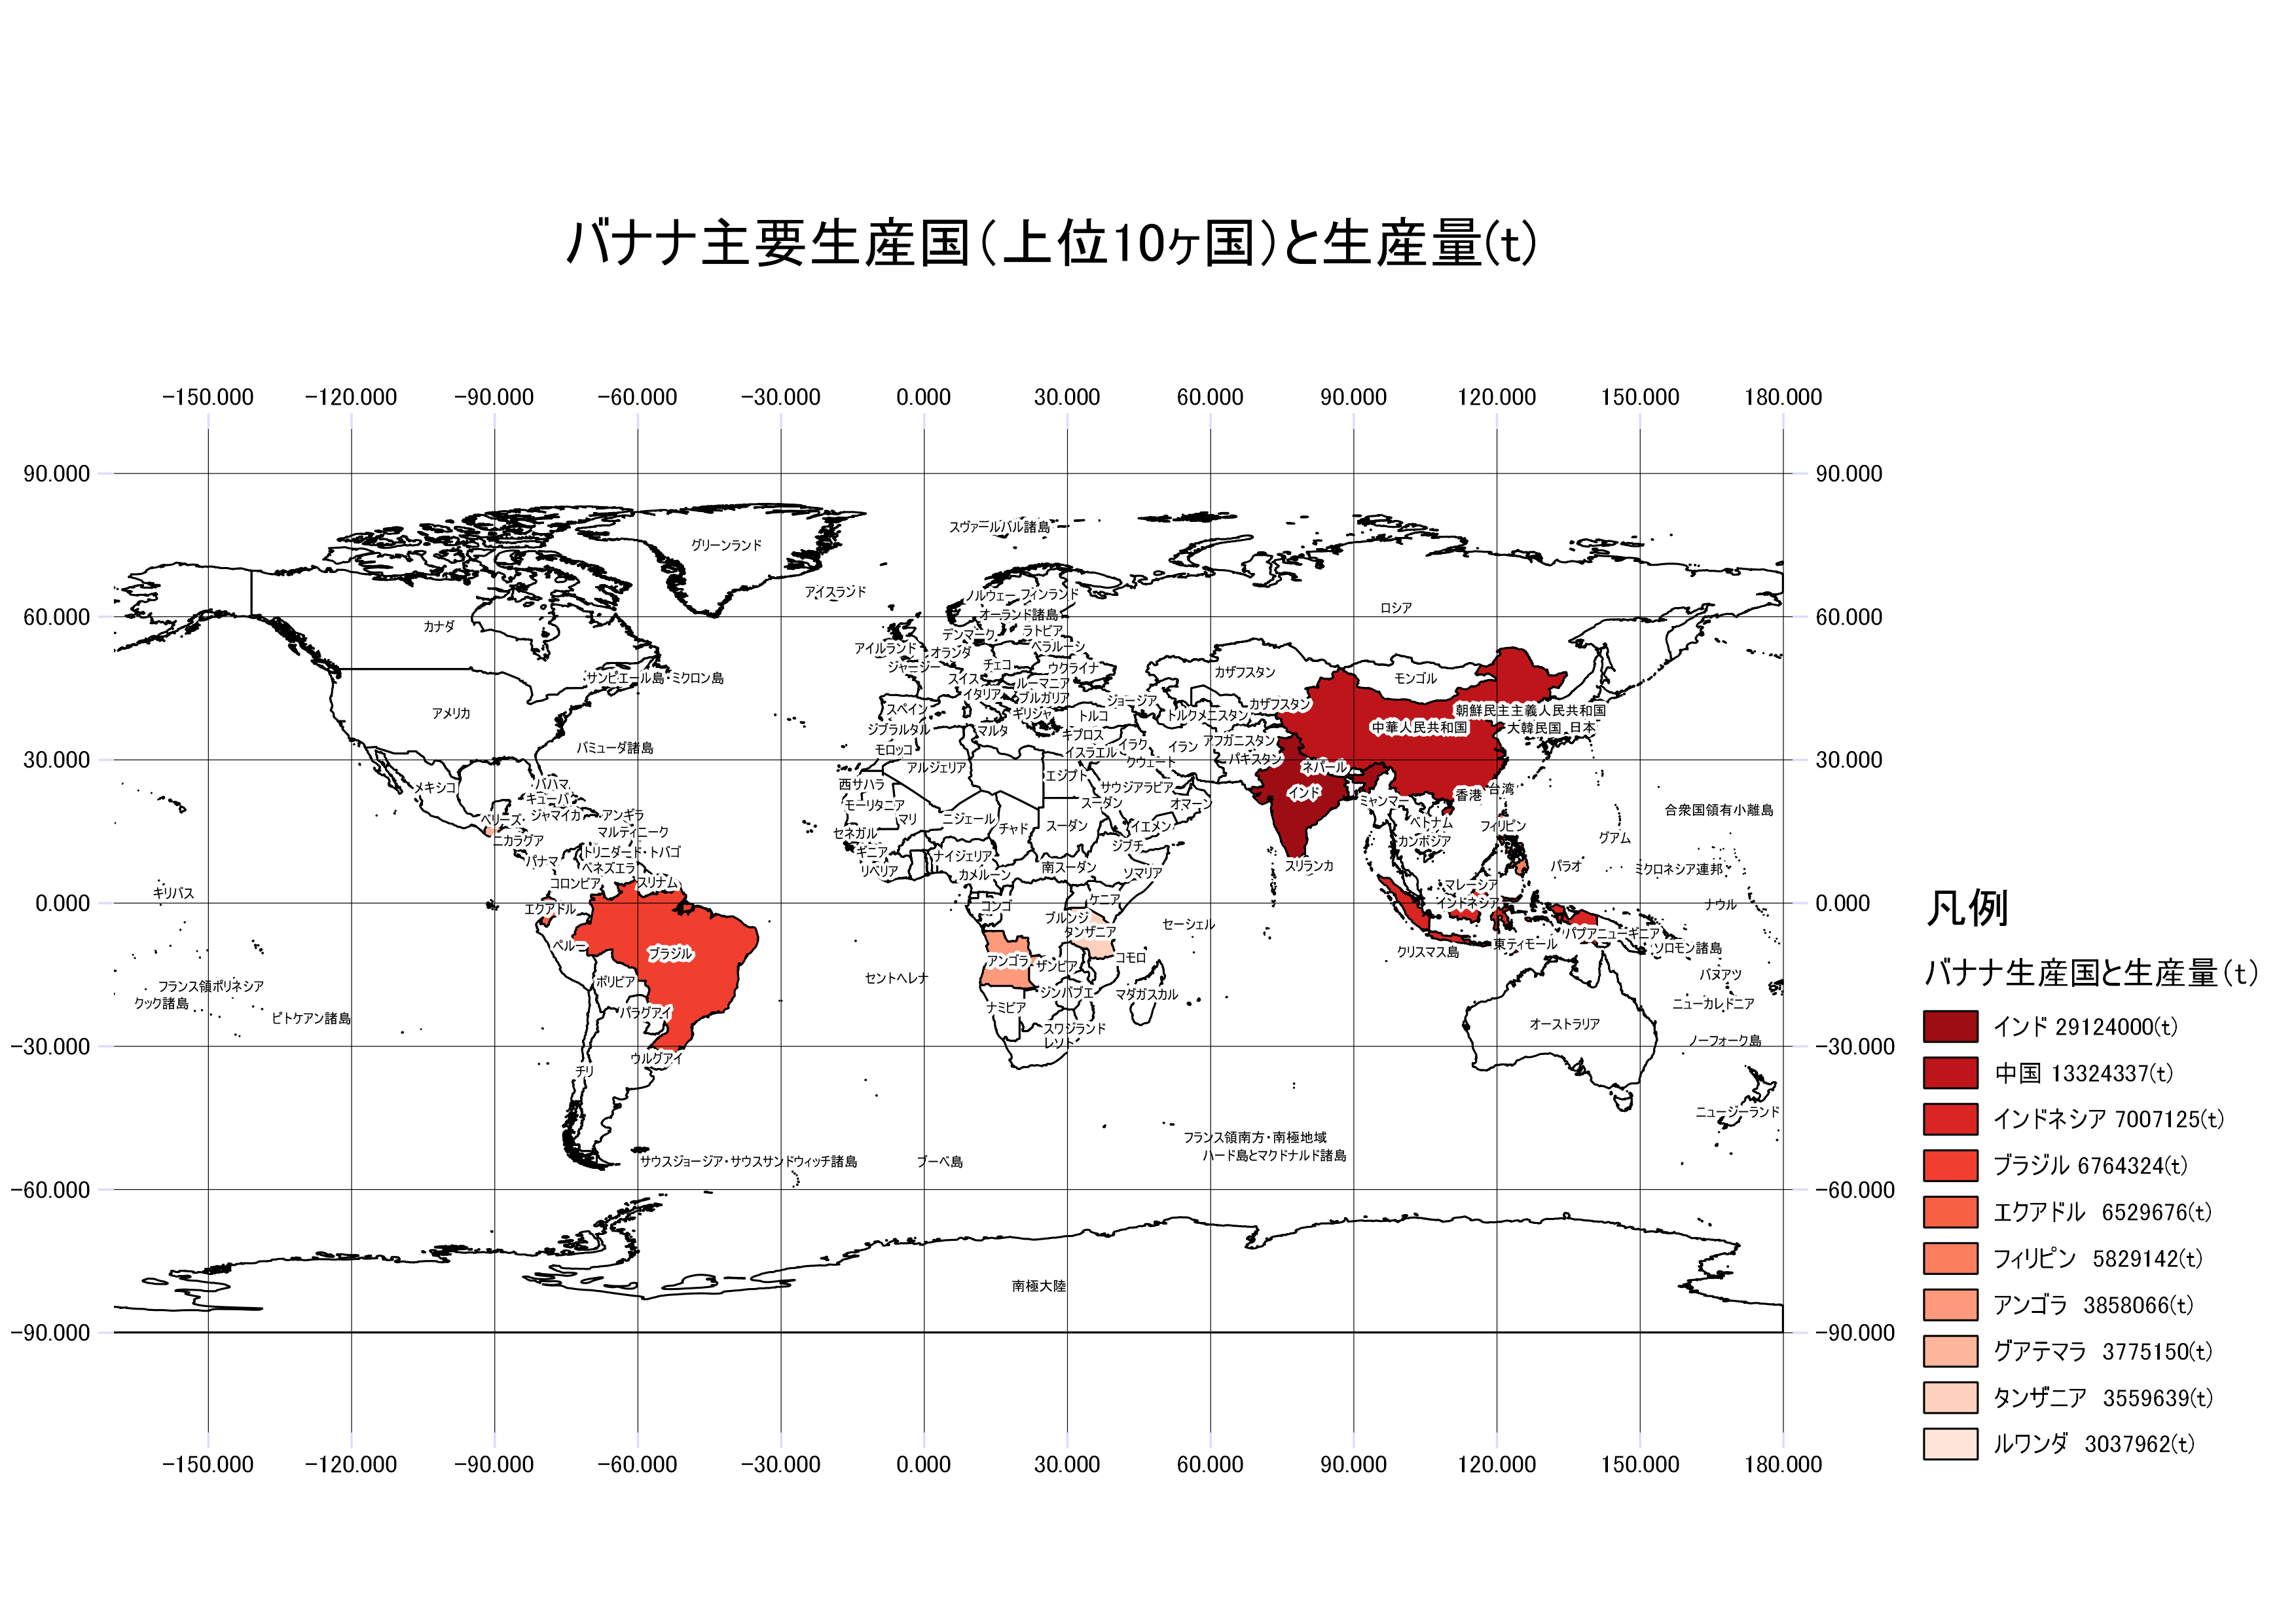 日本と世界の統計情報の可視化 Gis実習オープン教材